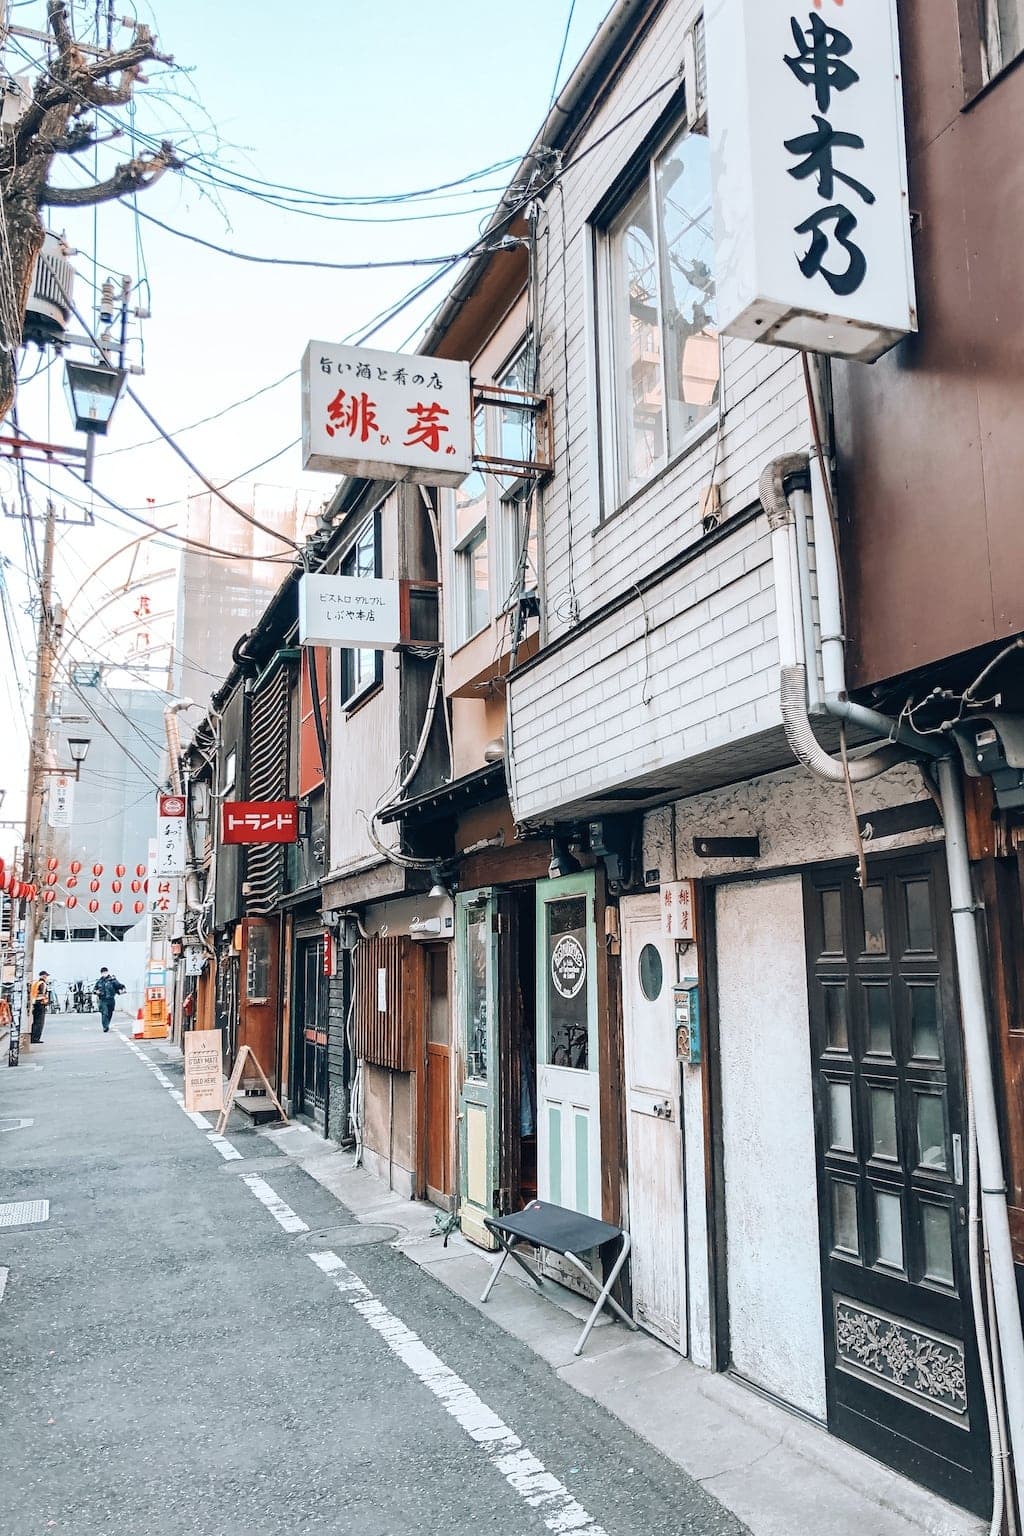 Things to Do in Tokyo: Nonbei Yokocho